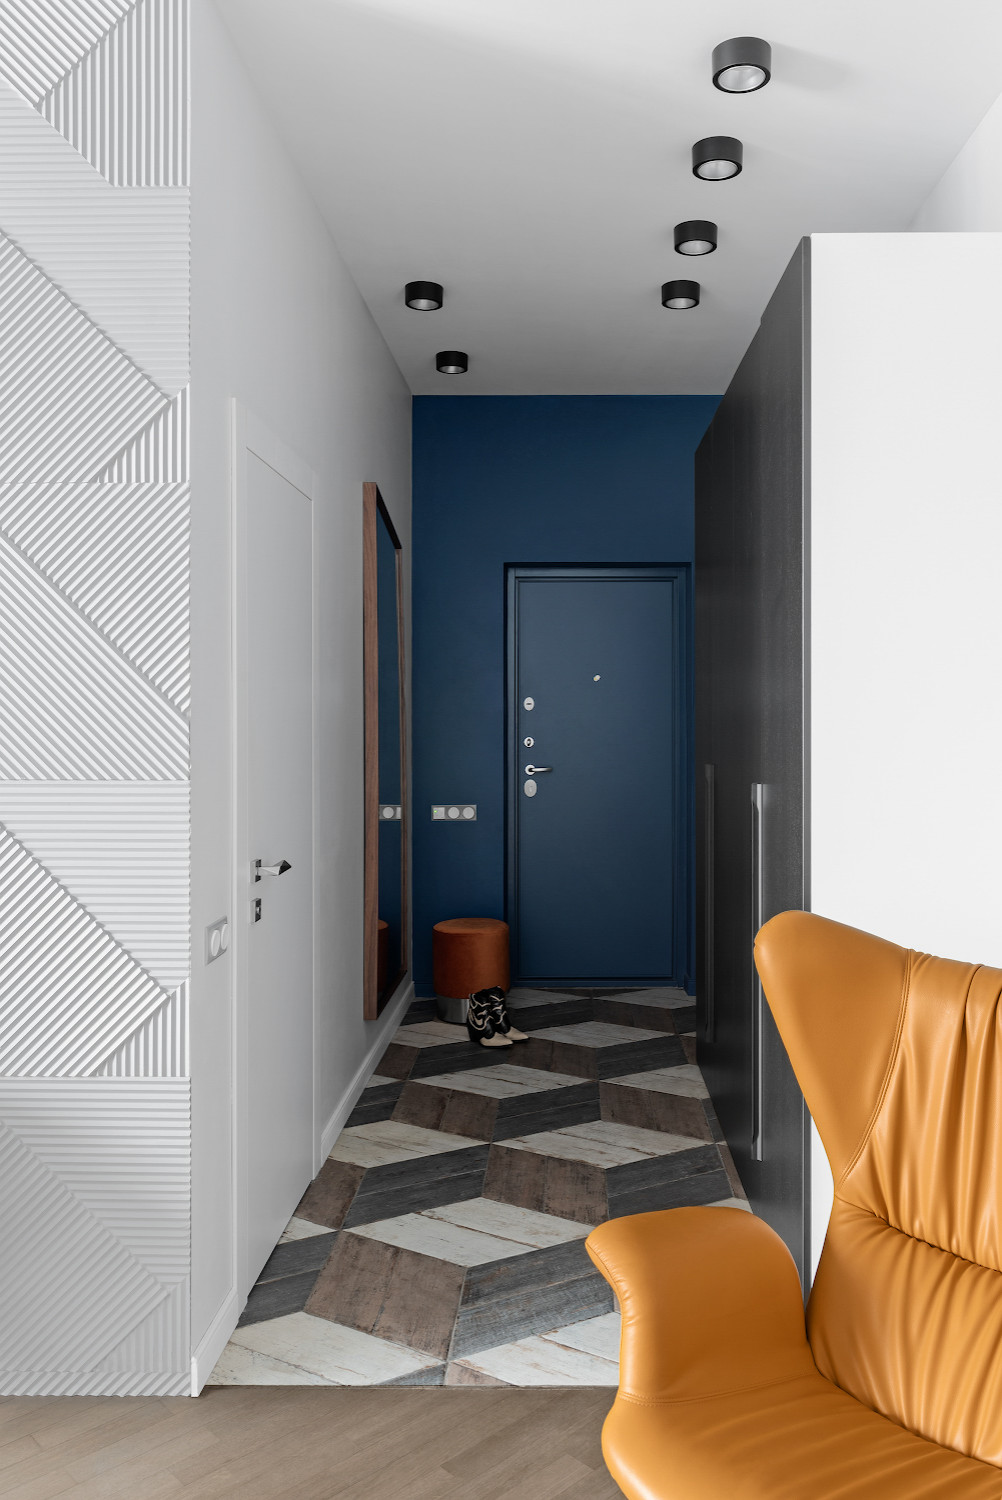 Дизайн узкой прихожей в квартире, идеи для ремонта в прихожей — фото реальных интерьеров